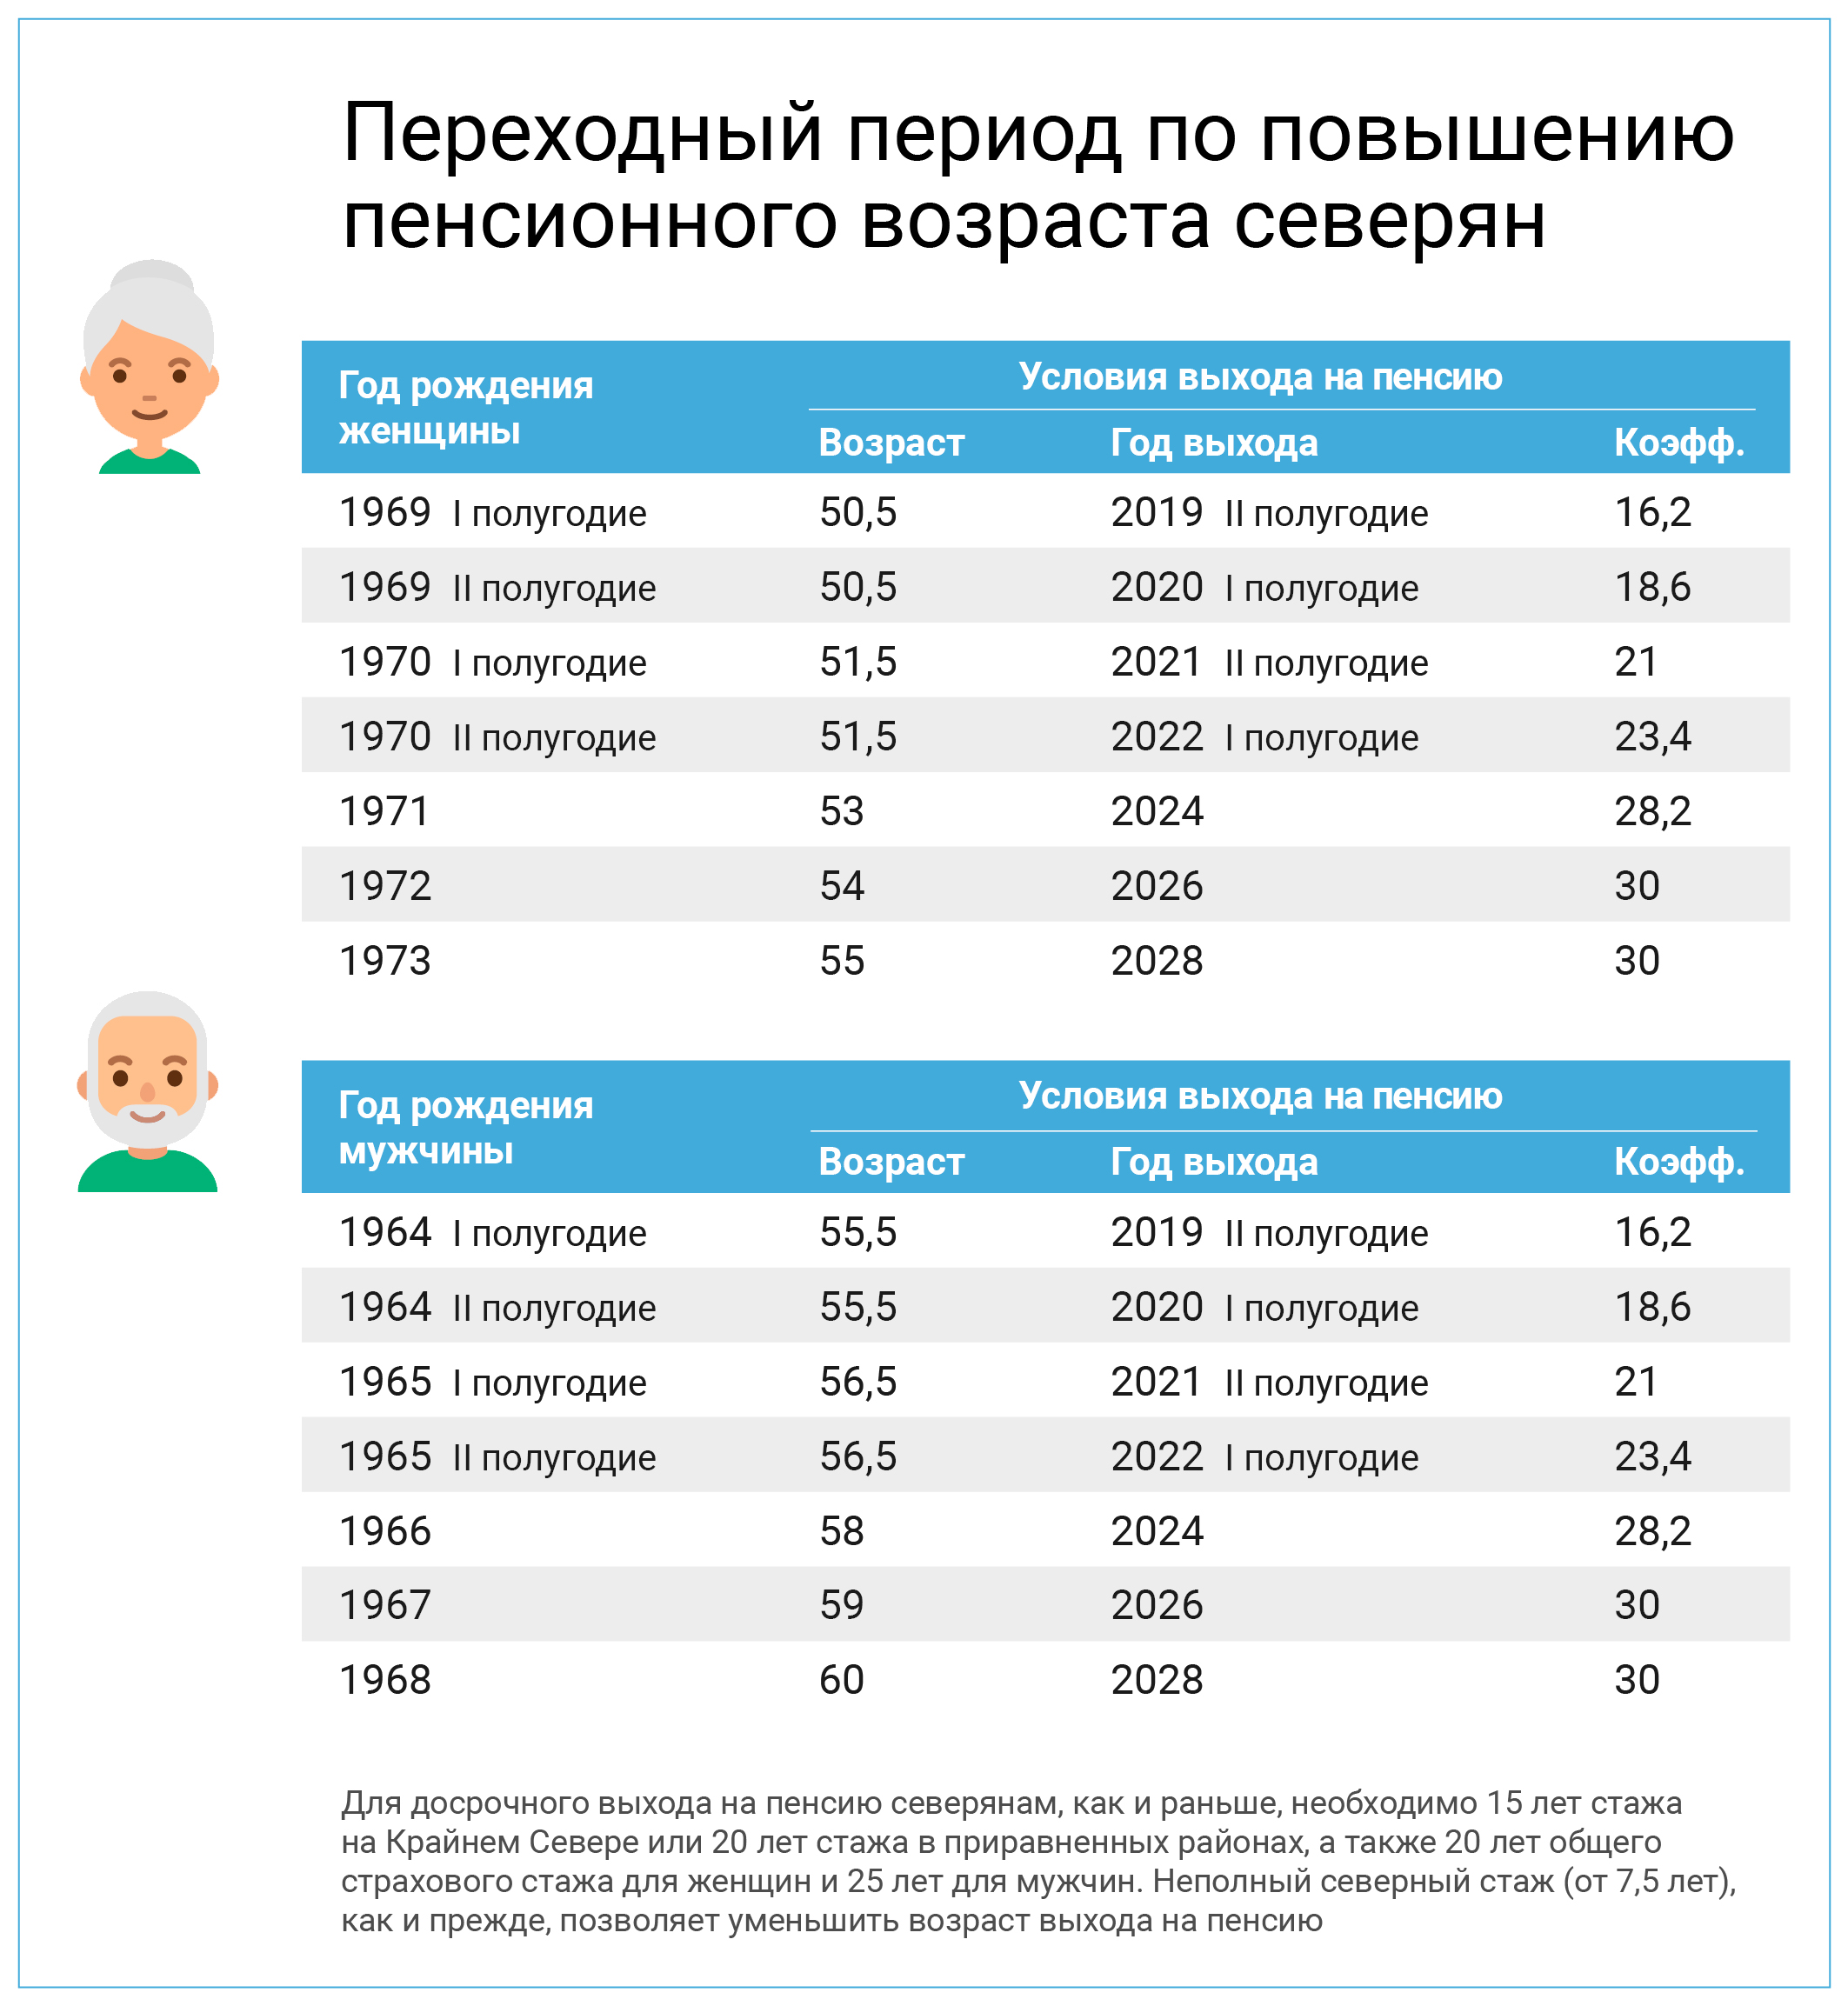 Когда подать на пенсию по старости. Таблица возрастов выхода на пенсию. Таблица выхода на пенсию по старости по годам. Таблица выхода на пенсию северянам по новому закону по годам. Пенсионный Возраст в России с 2021 года таблица.